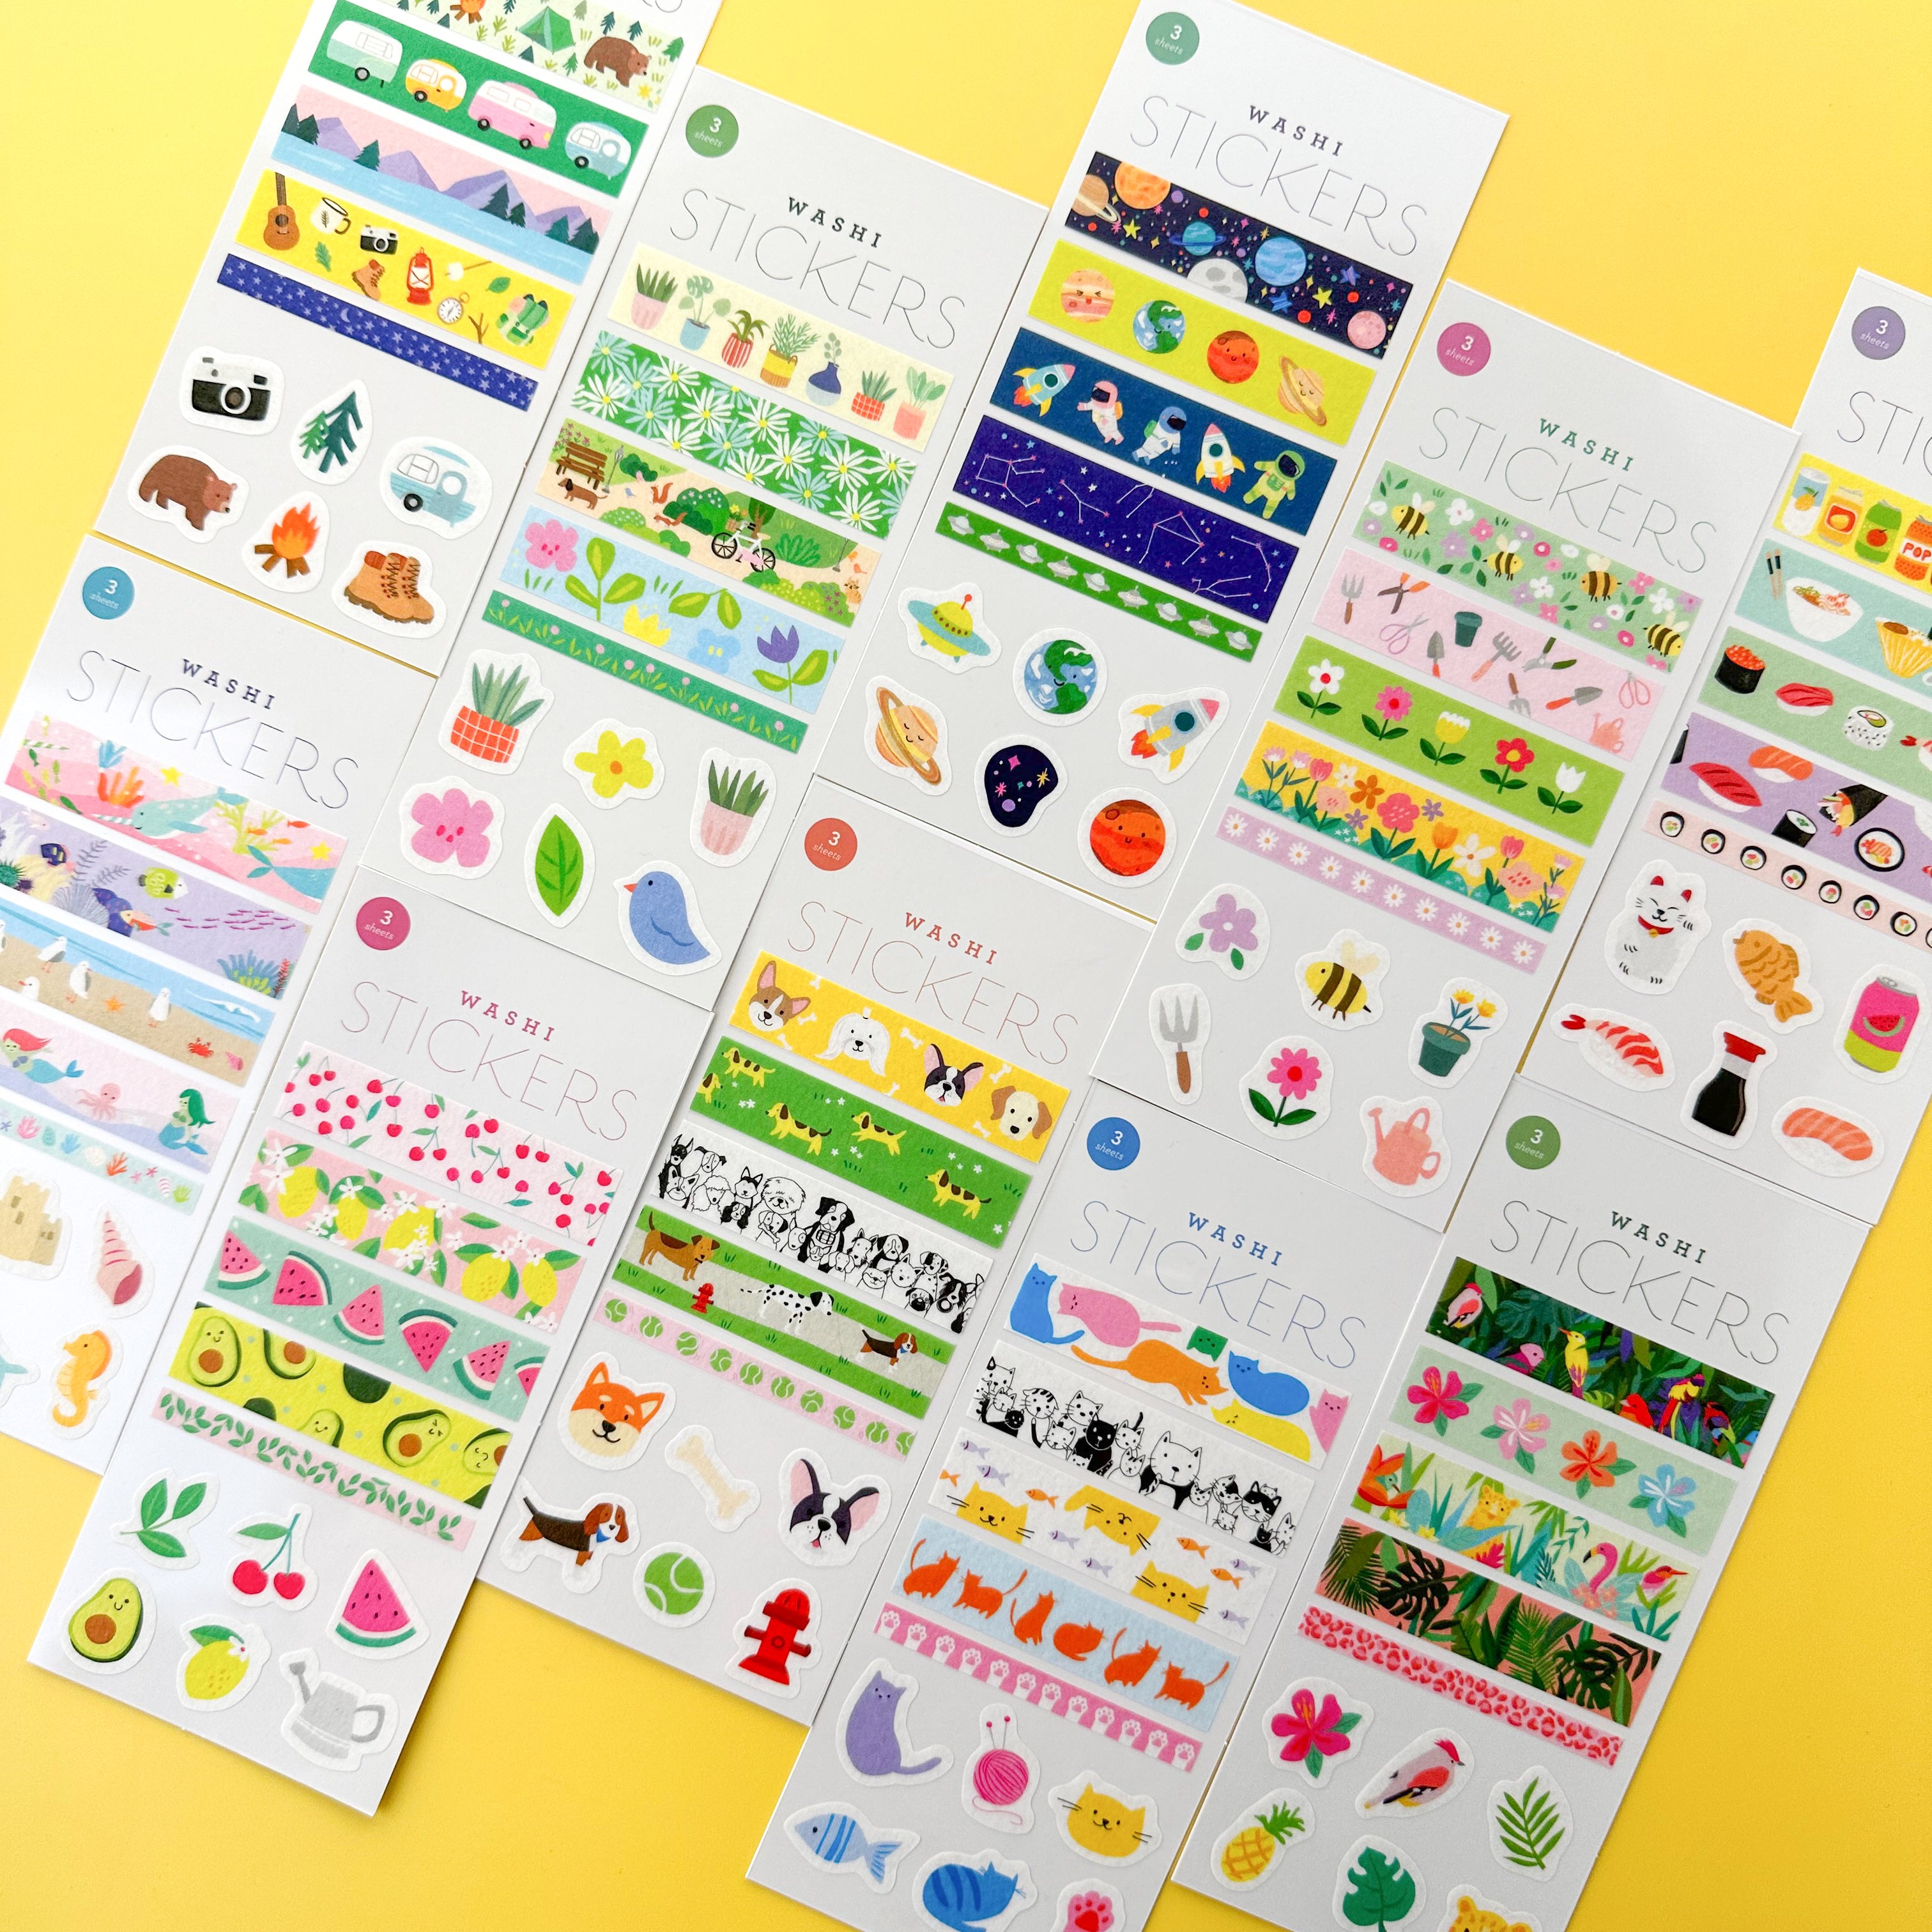 Washi Sticker Sheets